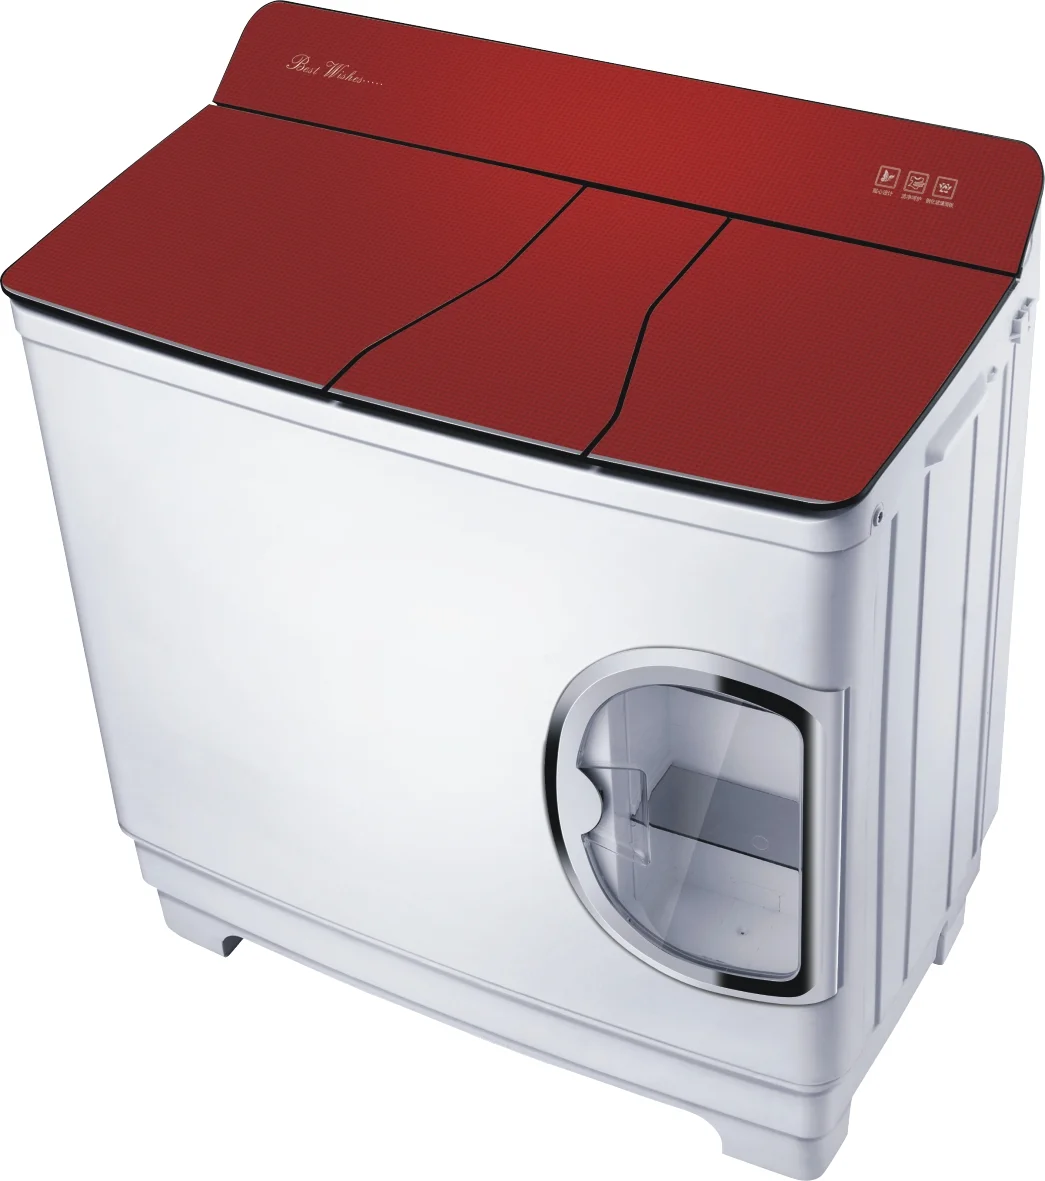 2022 Suitable For Multiple Scenarios Portable Regular Plastic Automatic Washing Machine